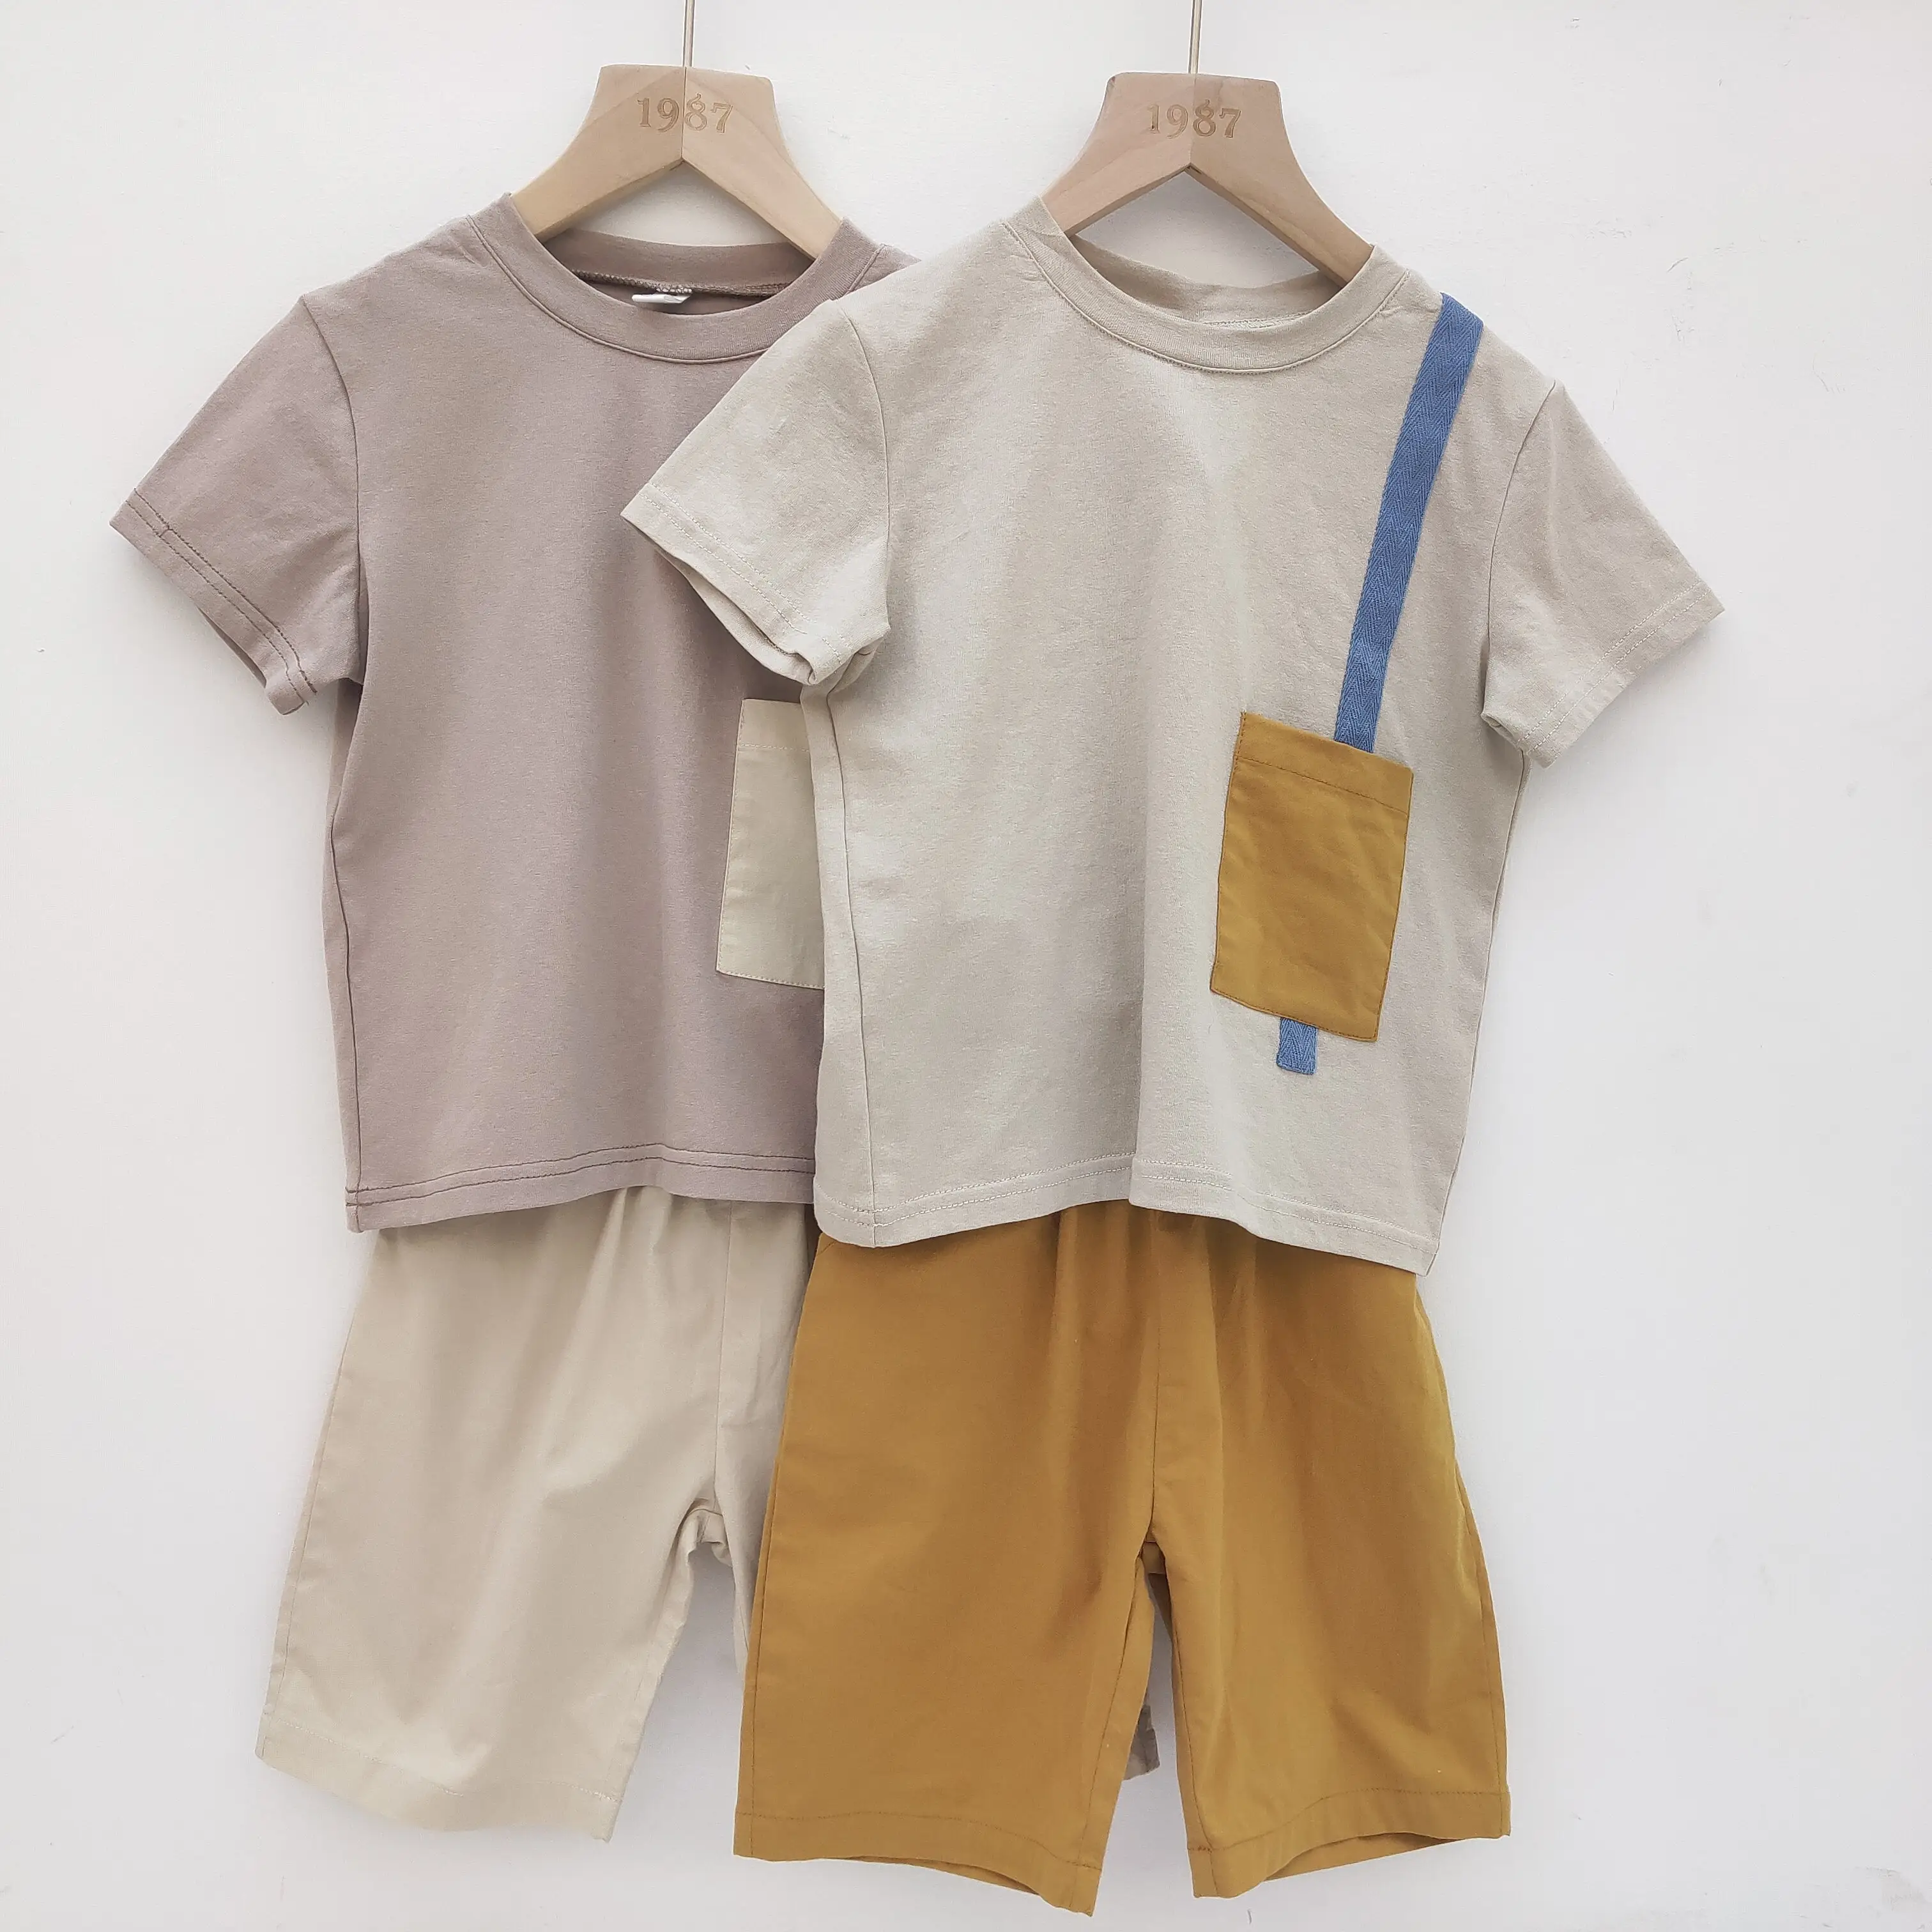 Conjunto de roupas infantis de 2021, conjunto de roupas de verão para meninos e crianças